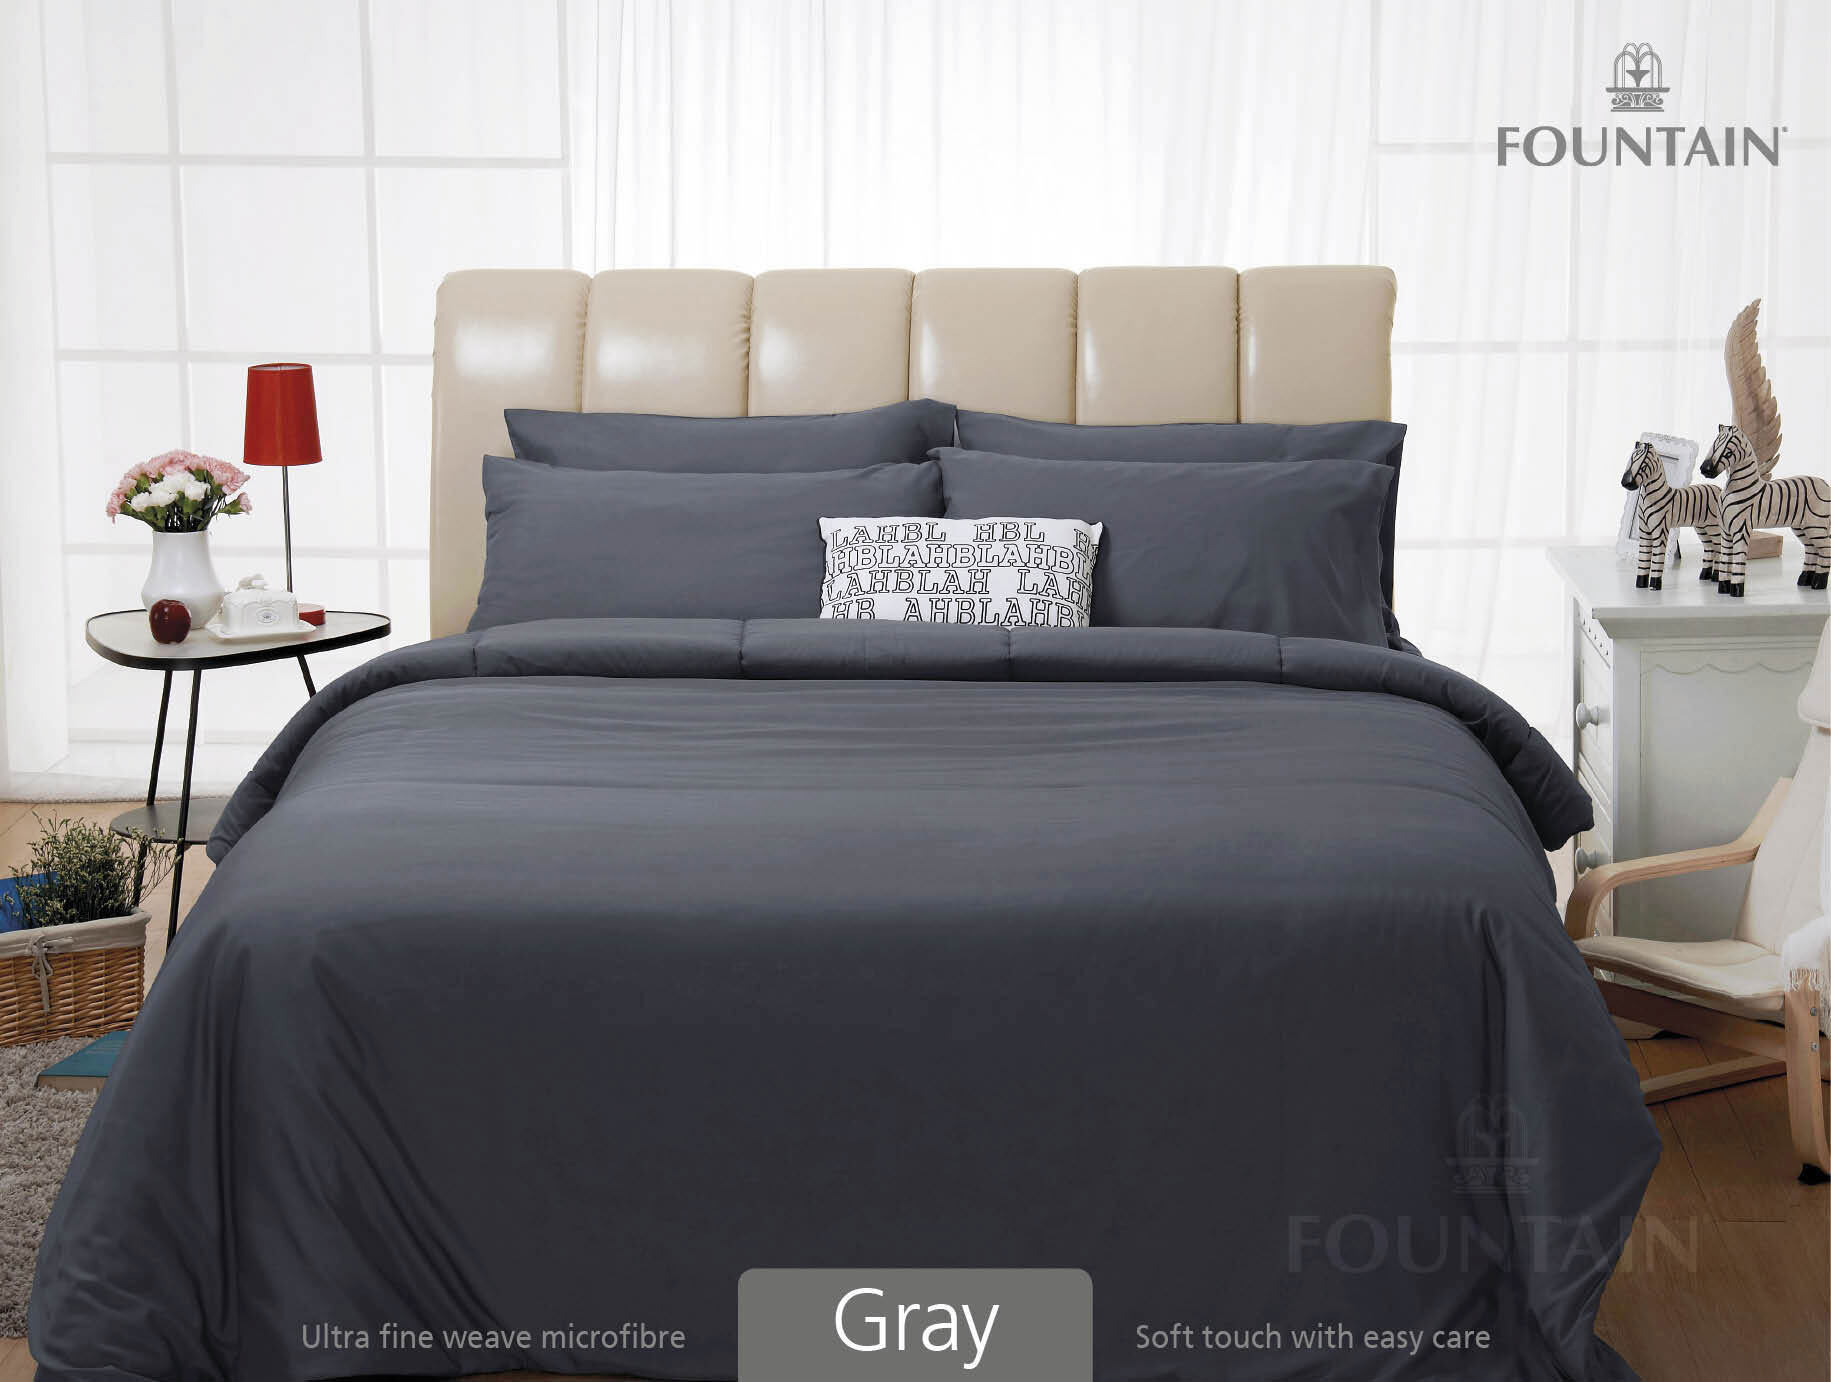 FOUNTAIN ผ้านวม + ชุดผ้าปู ผ้าปู ที่นอน แท้ 100% FTC สีพื้น เขียว Green Gray เทา ขนาด 3.5 5 6ฟุต ชุดเครื่องนอน ผ้านวม ผ้าปูที่นอน wonderful bedding  สี → Grayขนาดสินค้า 5 ฟุต